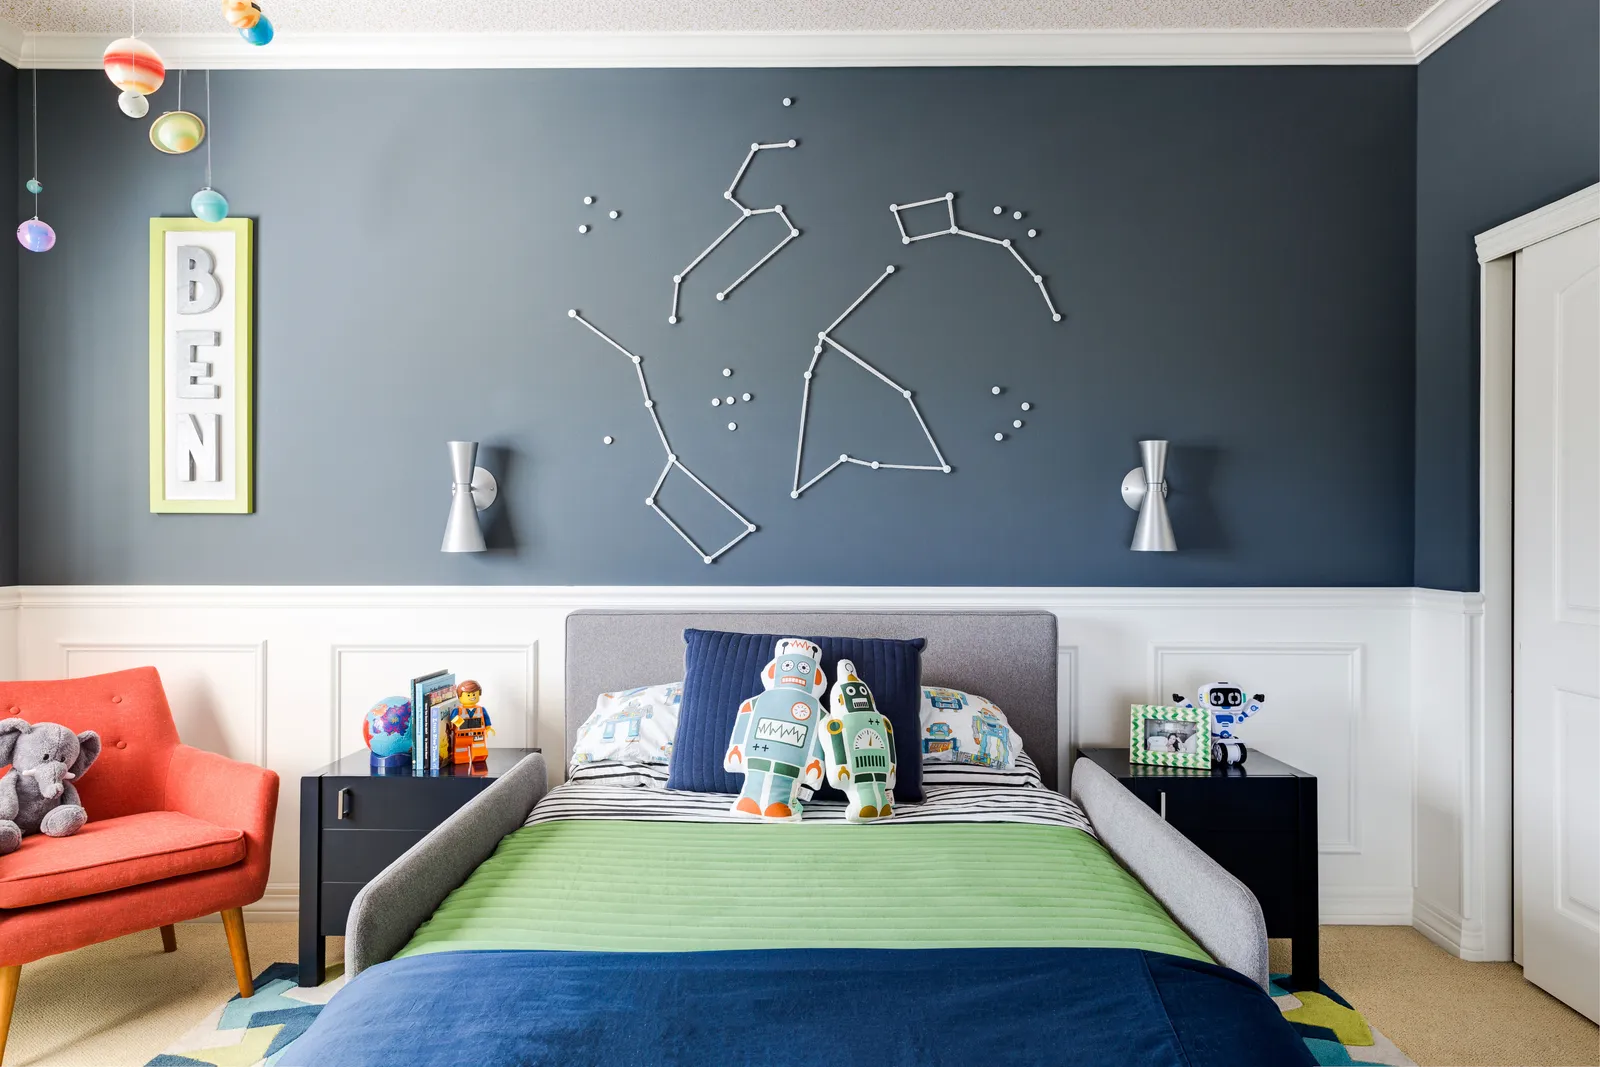 Thiết kế một vũ trụ nhỏ phía trên đầu giường của bạn. Nhìn thấy ở đây trong phòng ngủ của trẻ em, điều này có thể dễ dàng phù hợp với mọi lứa tuổi. Đây là một dự án DIY có tác động mạnh mẽ nhưng dễ dàng: Chỉ cần tạo một mẫu, dán nó lên tường và xâu sợi len màu trắng vào giữa các đinh lợp mái (sơn màu trắng để trông giống những ngôi sao).